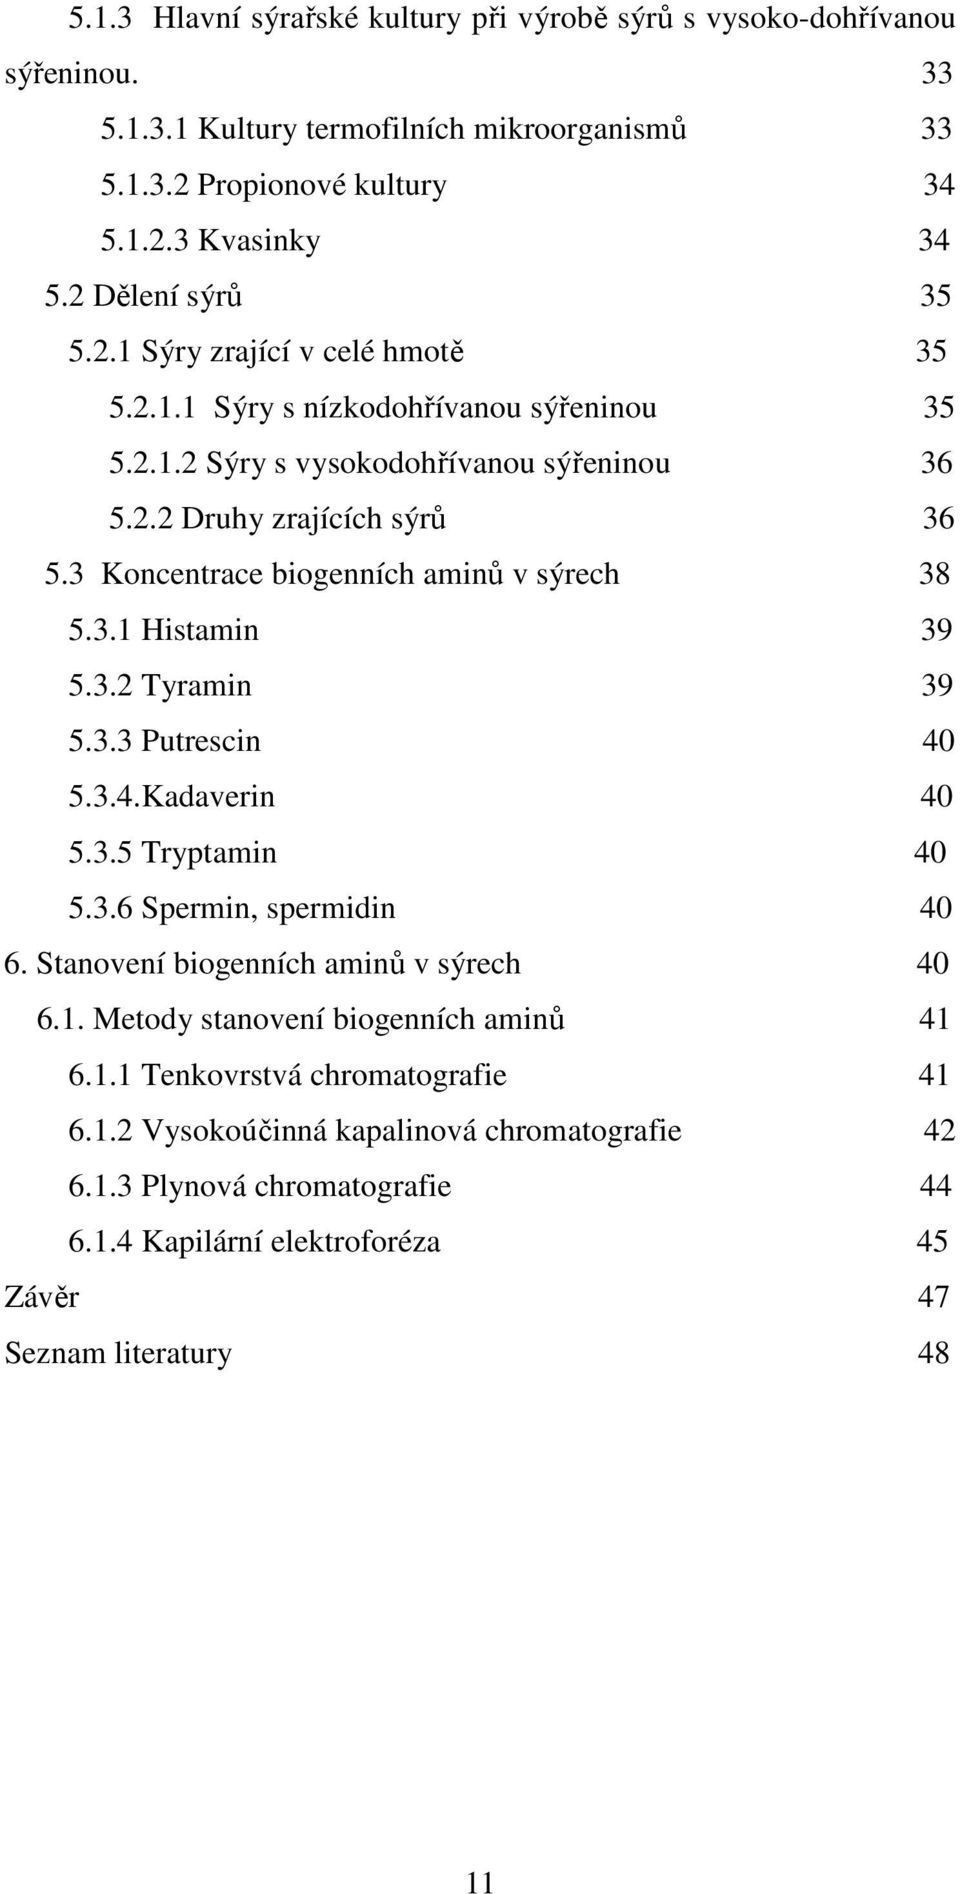 3 Koncentrace biogenních aminů v sýrech 38 5.3.1 Histamin 39 5.3.2 Tyramin 39 5.3.3 Putrescin 40 5.3.4.Kadaverin 40 5.3.5 Tryptamin 40 5.3.6 Spermin, spermidin 40 6.